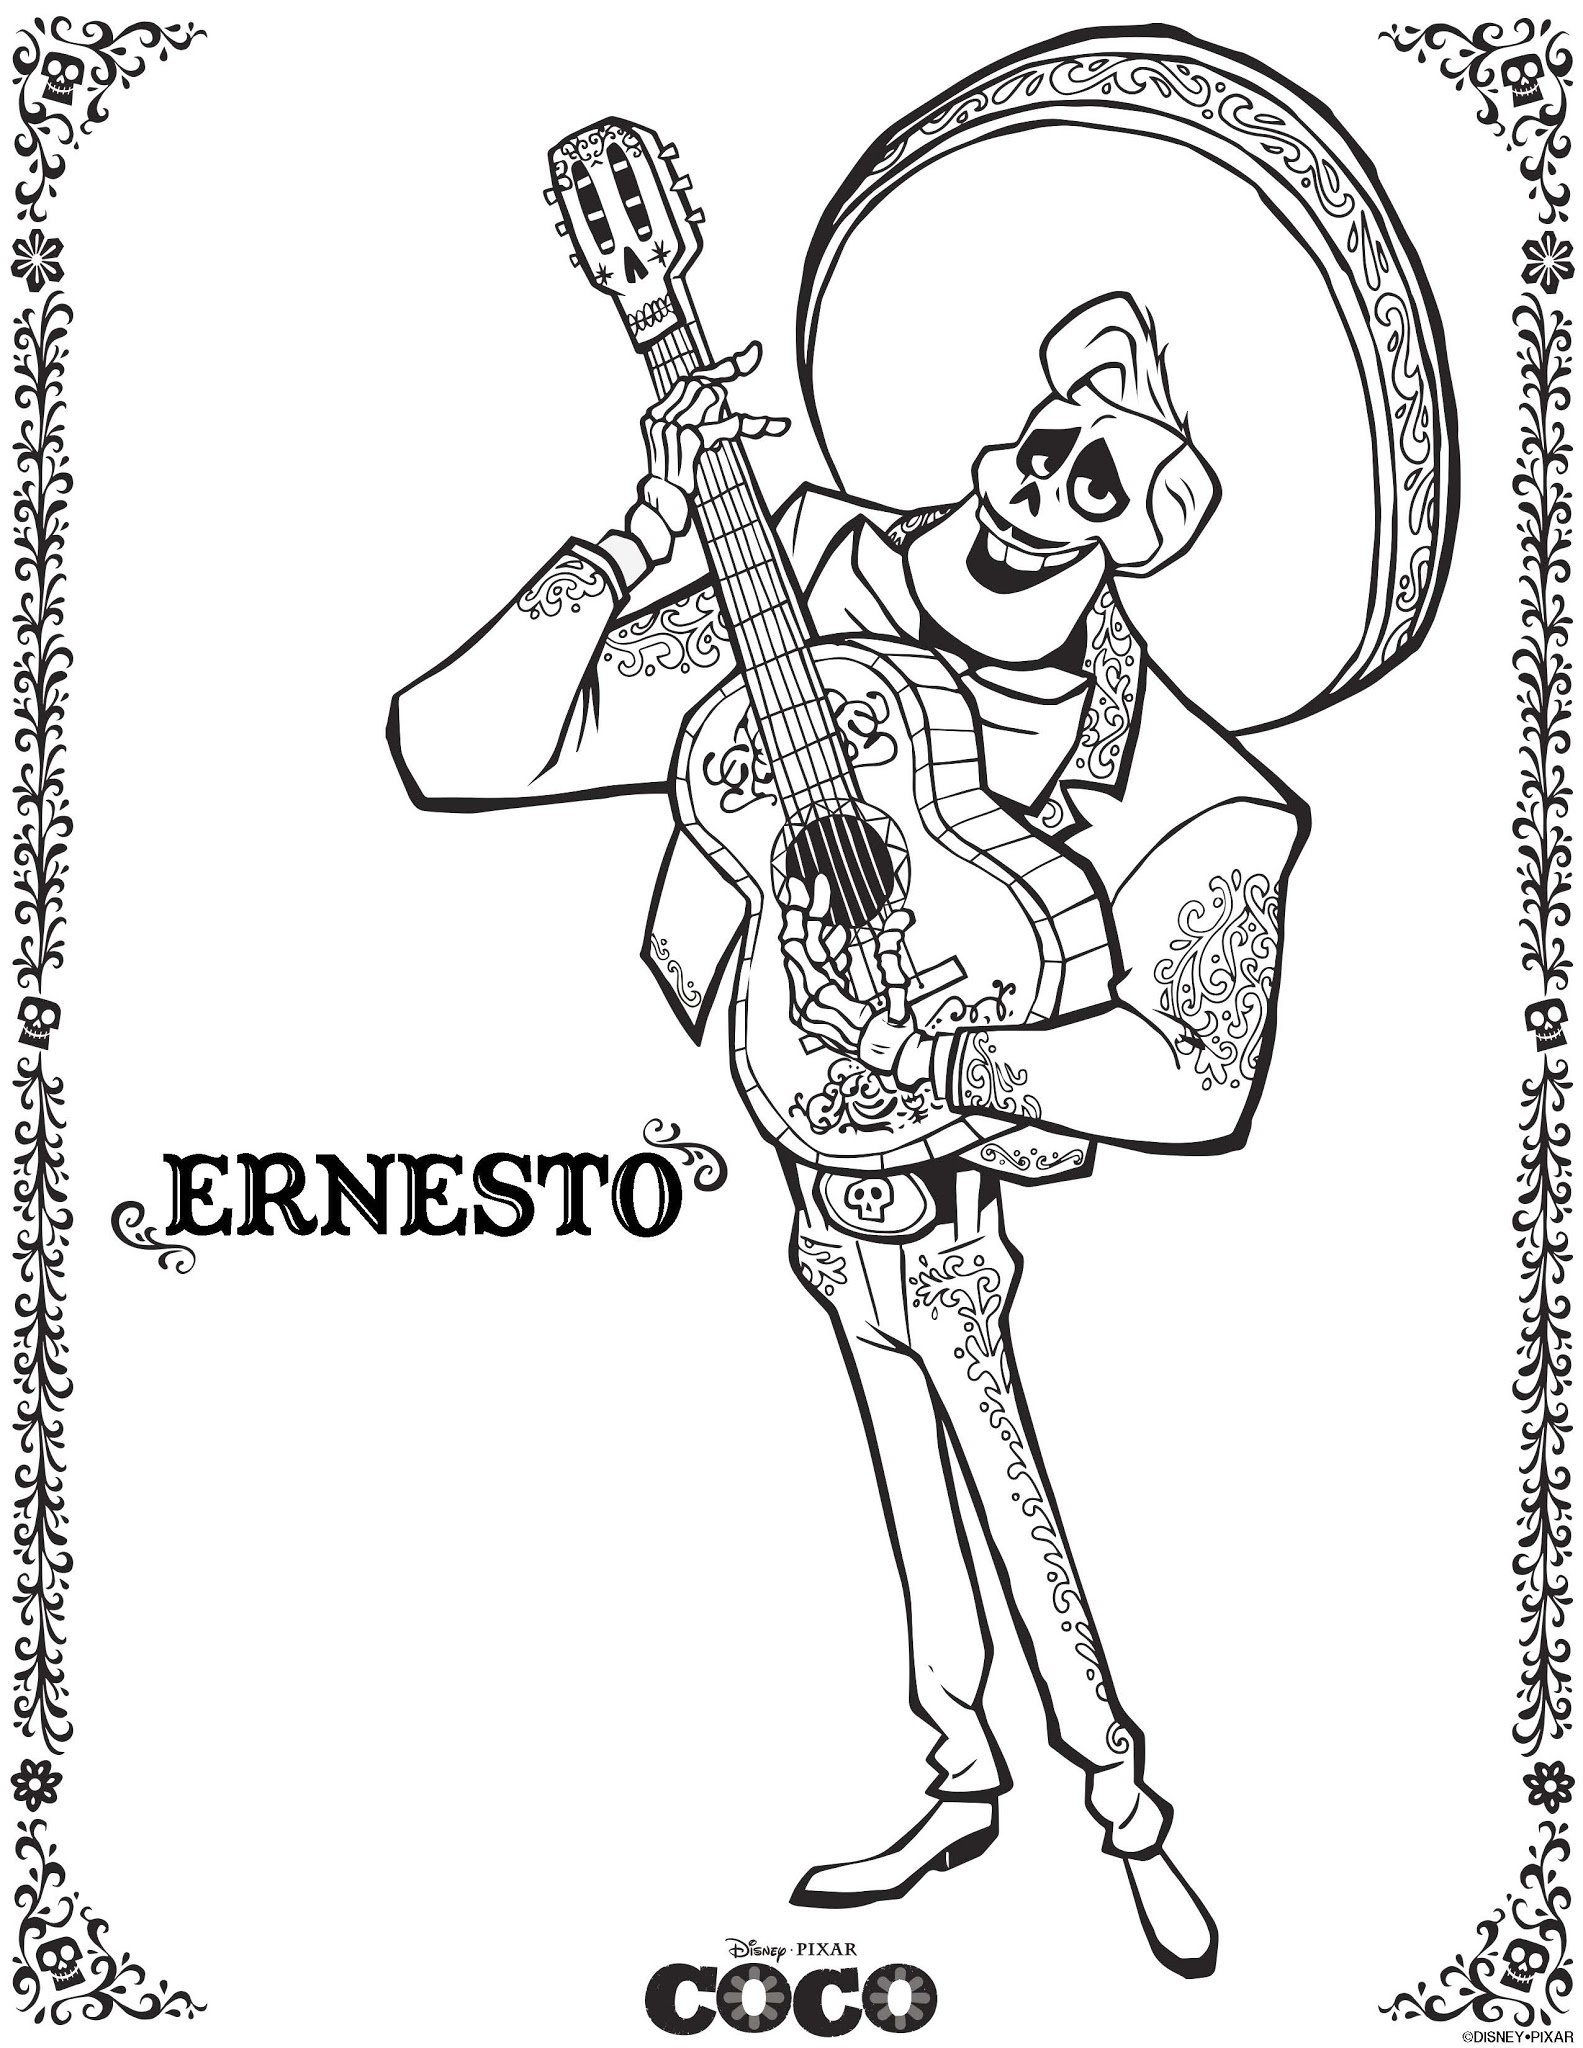 Ernesto – Cocos